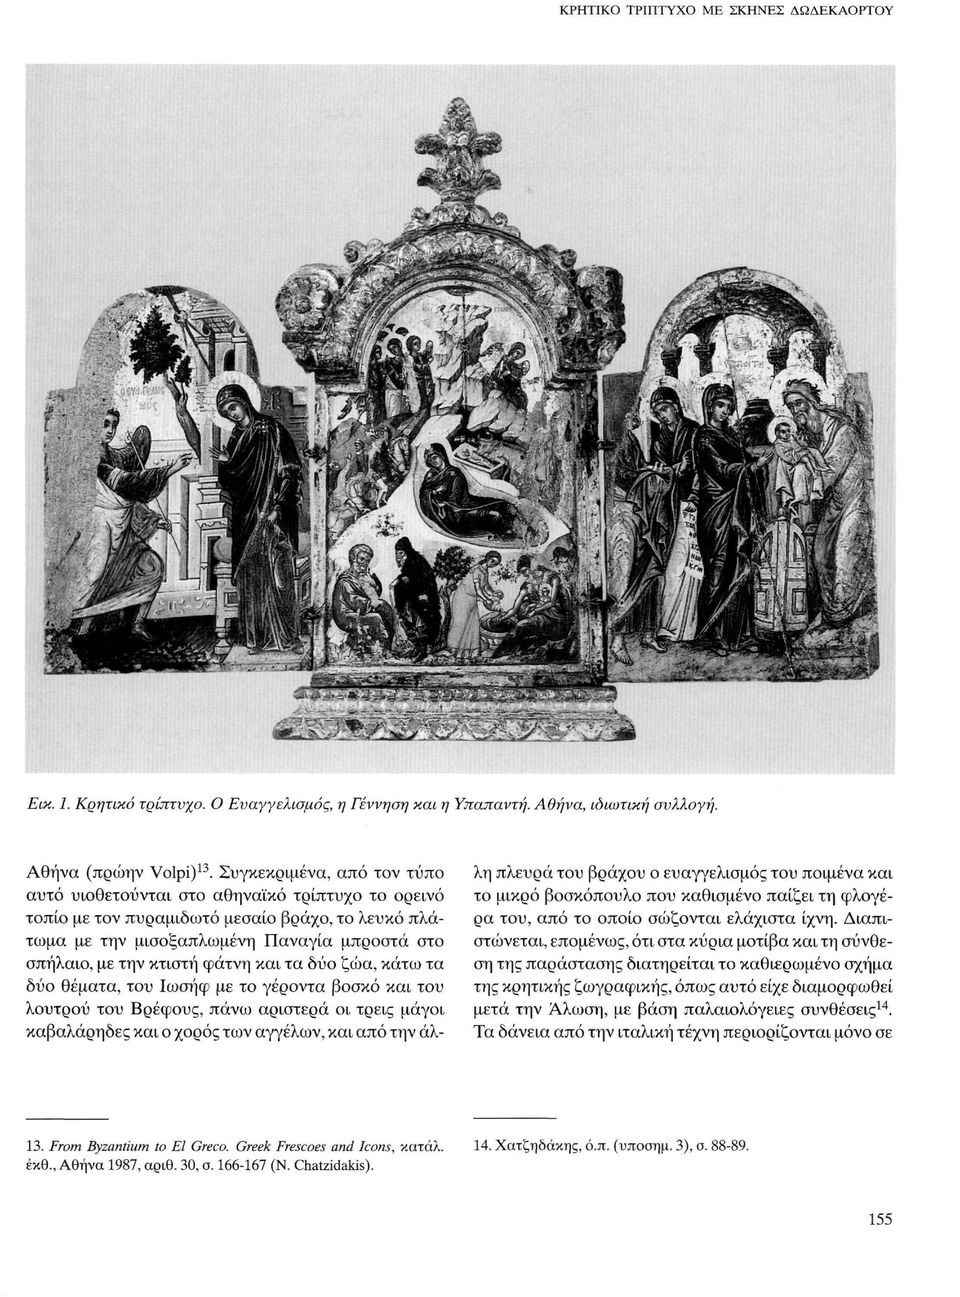 φάτνη και τα δύο ζώα, κάτω τα δύο θέματα, του Ιωσήφ με το γέροντα βοσκό και του λουτρού του Βρέφους, πάνω αριστερά οι τρεις μάγοι καβαλάρηδες και ο χορός των αγγέλων, και από την άλλη πλευρά του